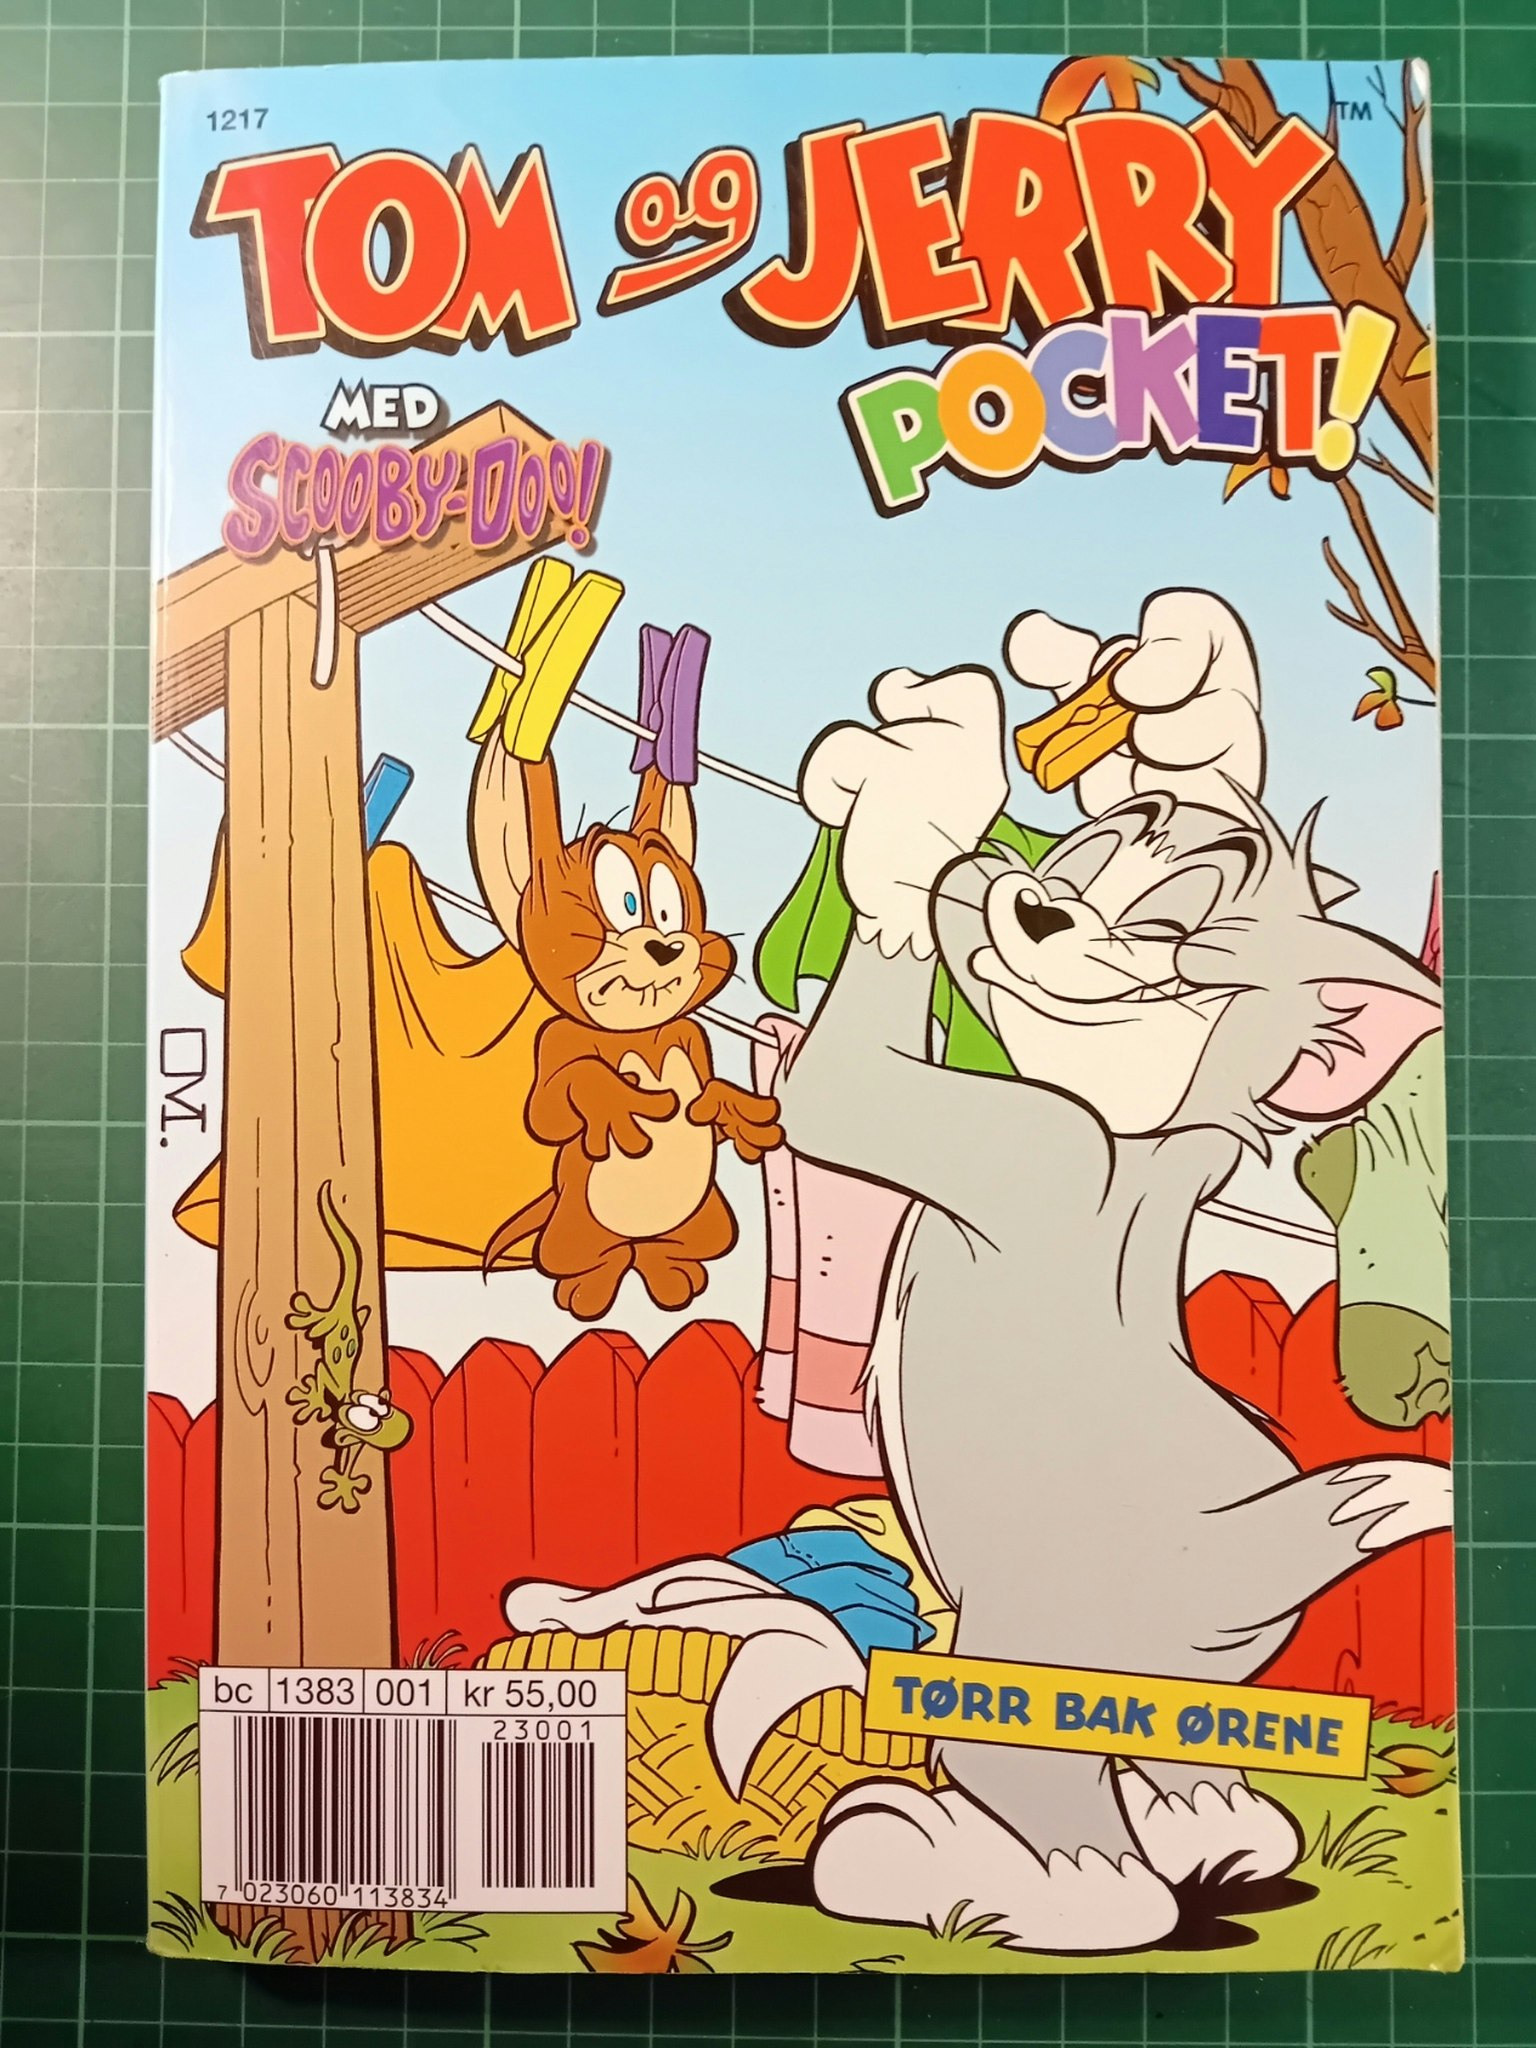 Tom og Jerry pocket 09